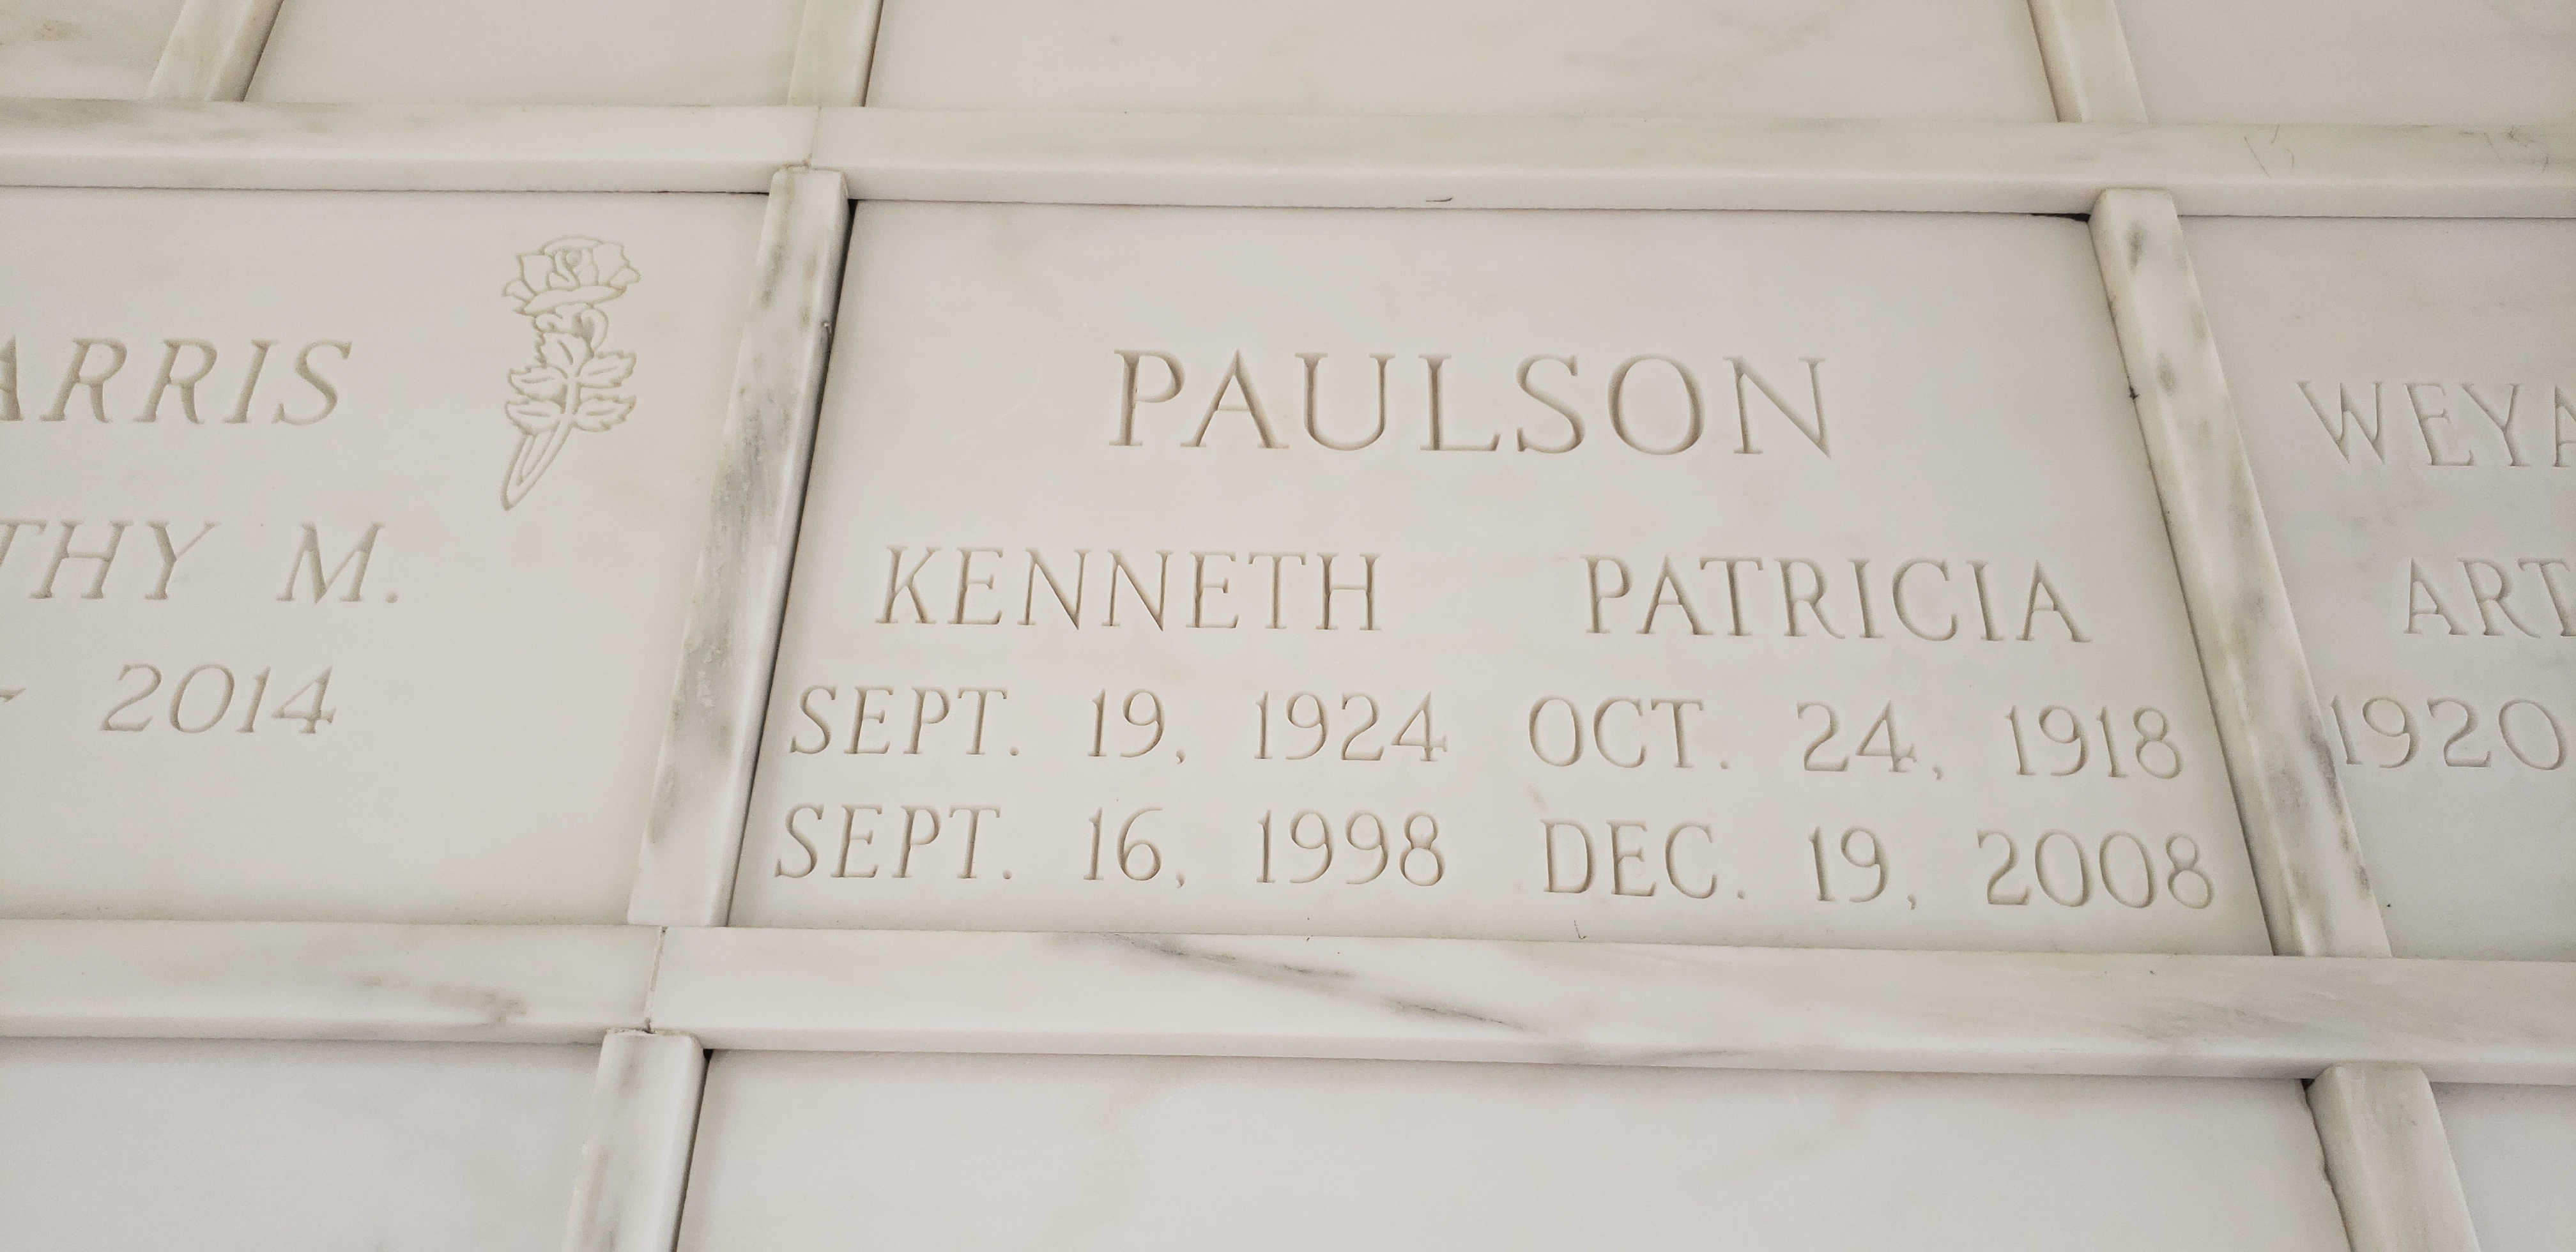 Kenneth Paulson